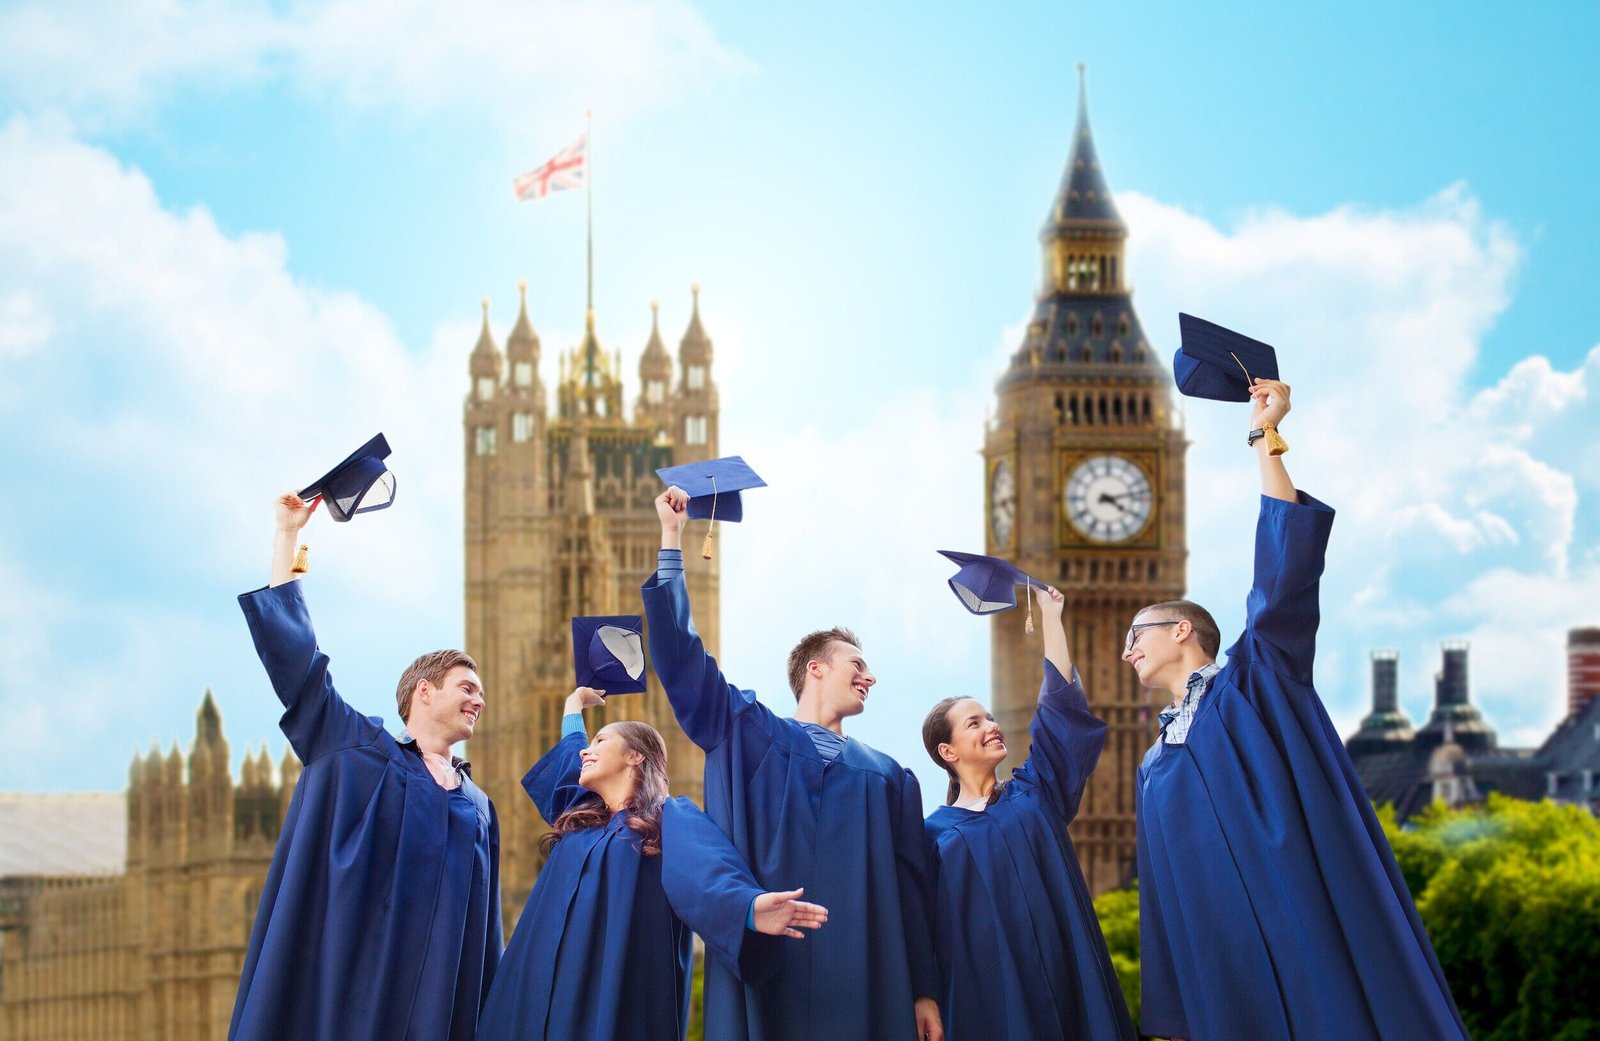 افضل الجامعات للدراسة في بريطانيا سهلة القبول